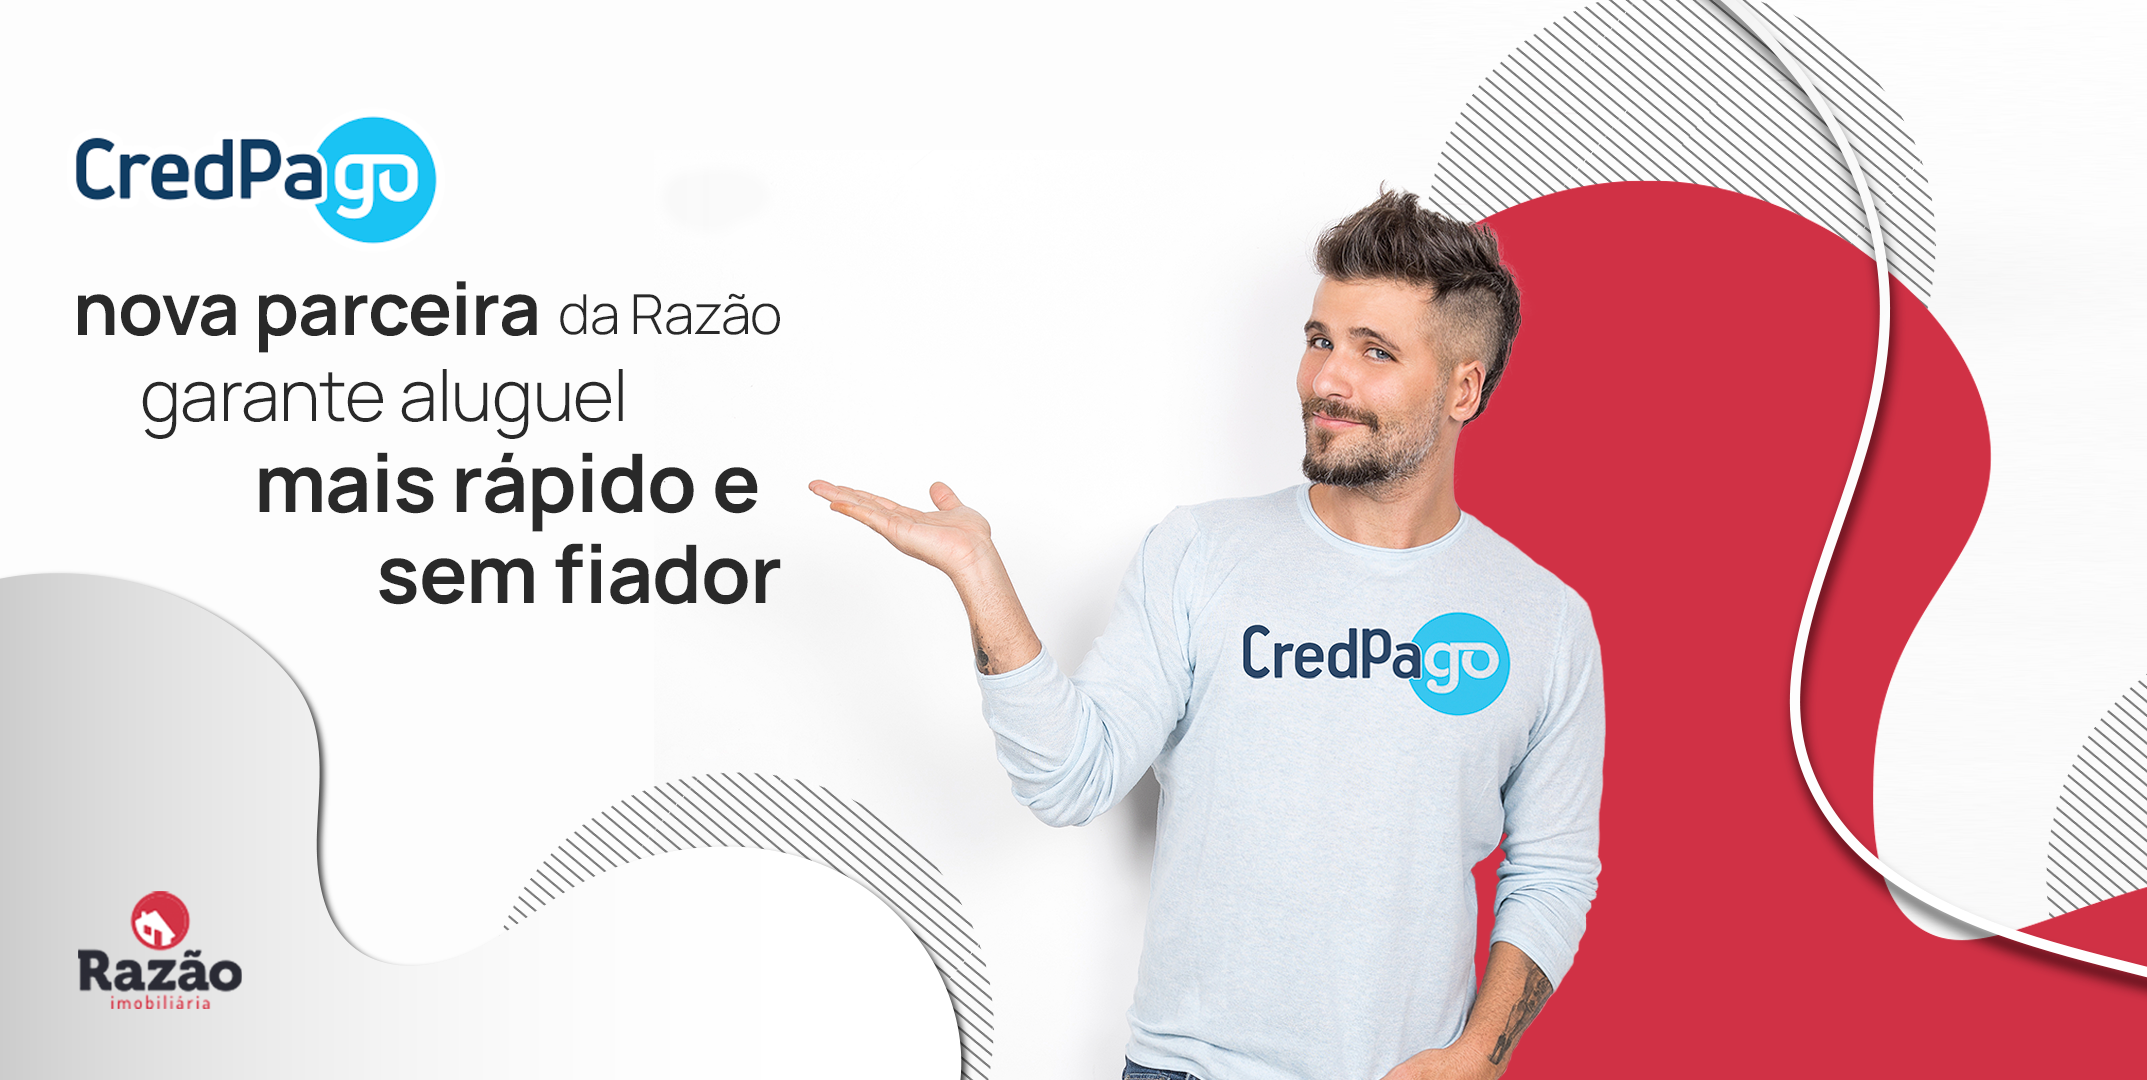 CredPago: nova parceira da Razão garante aluguel mais rápido e sem fiador